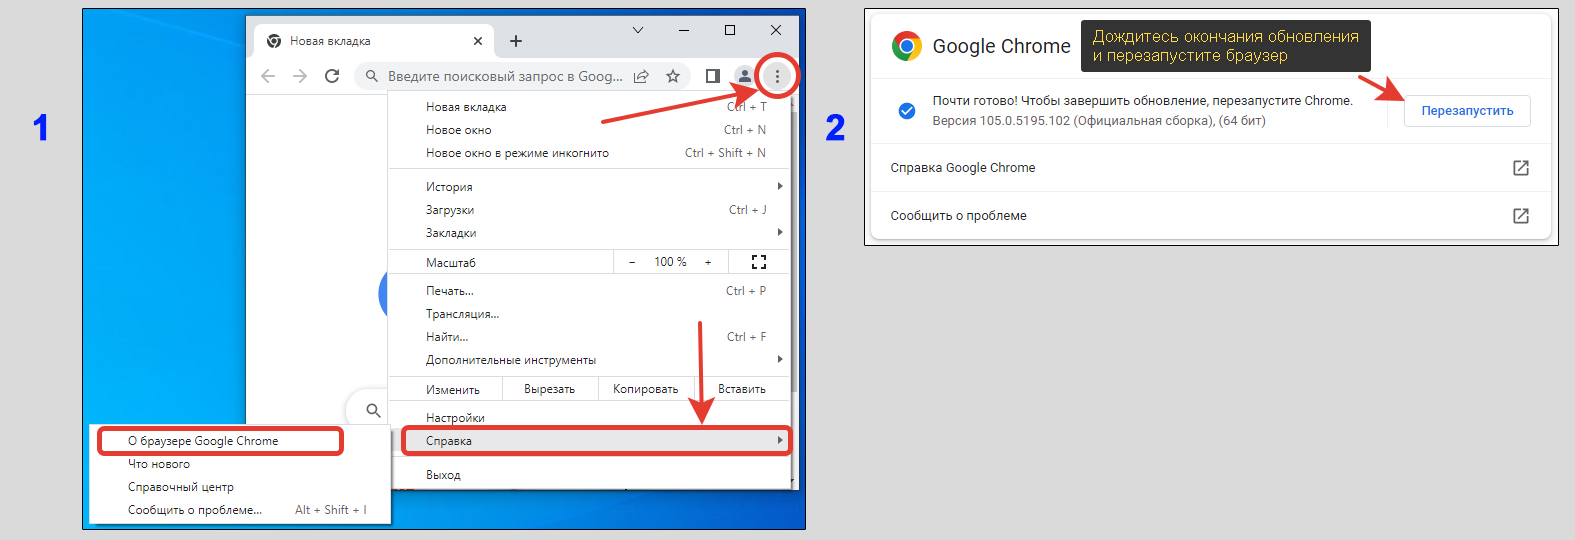 Обновление браузера Google Chrome через меню.